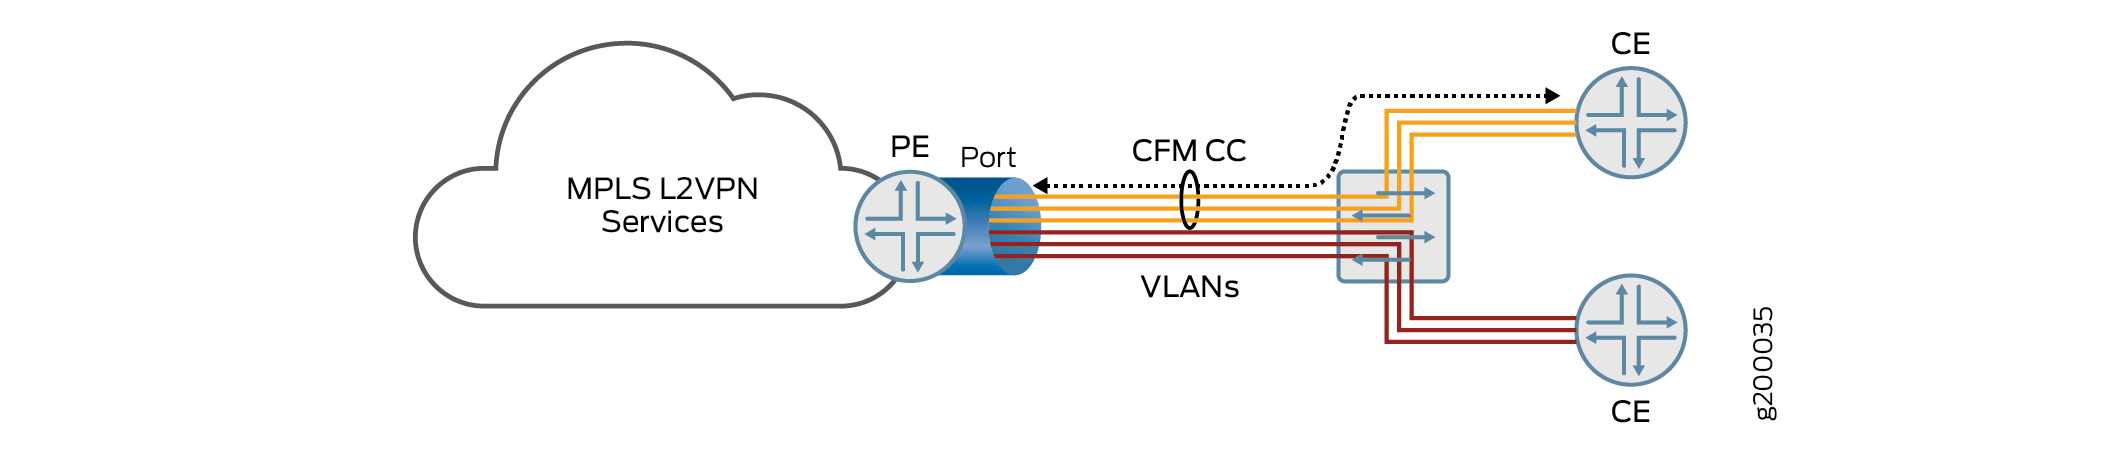 Topologie de plusieurs services VLAN partageant un seul port sur un routeur PE destiné à plusieurs routeurs CE